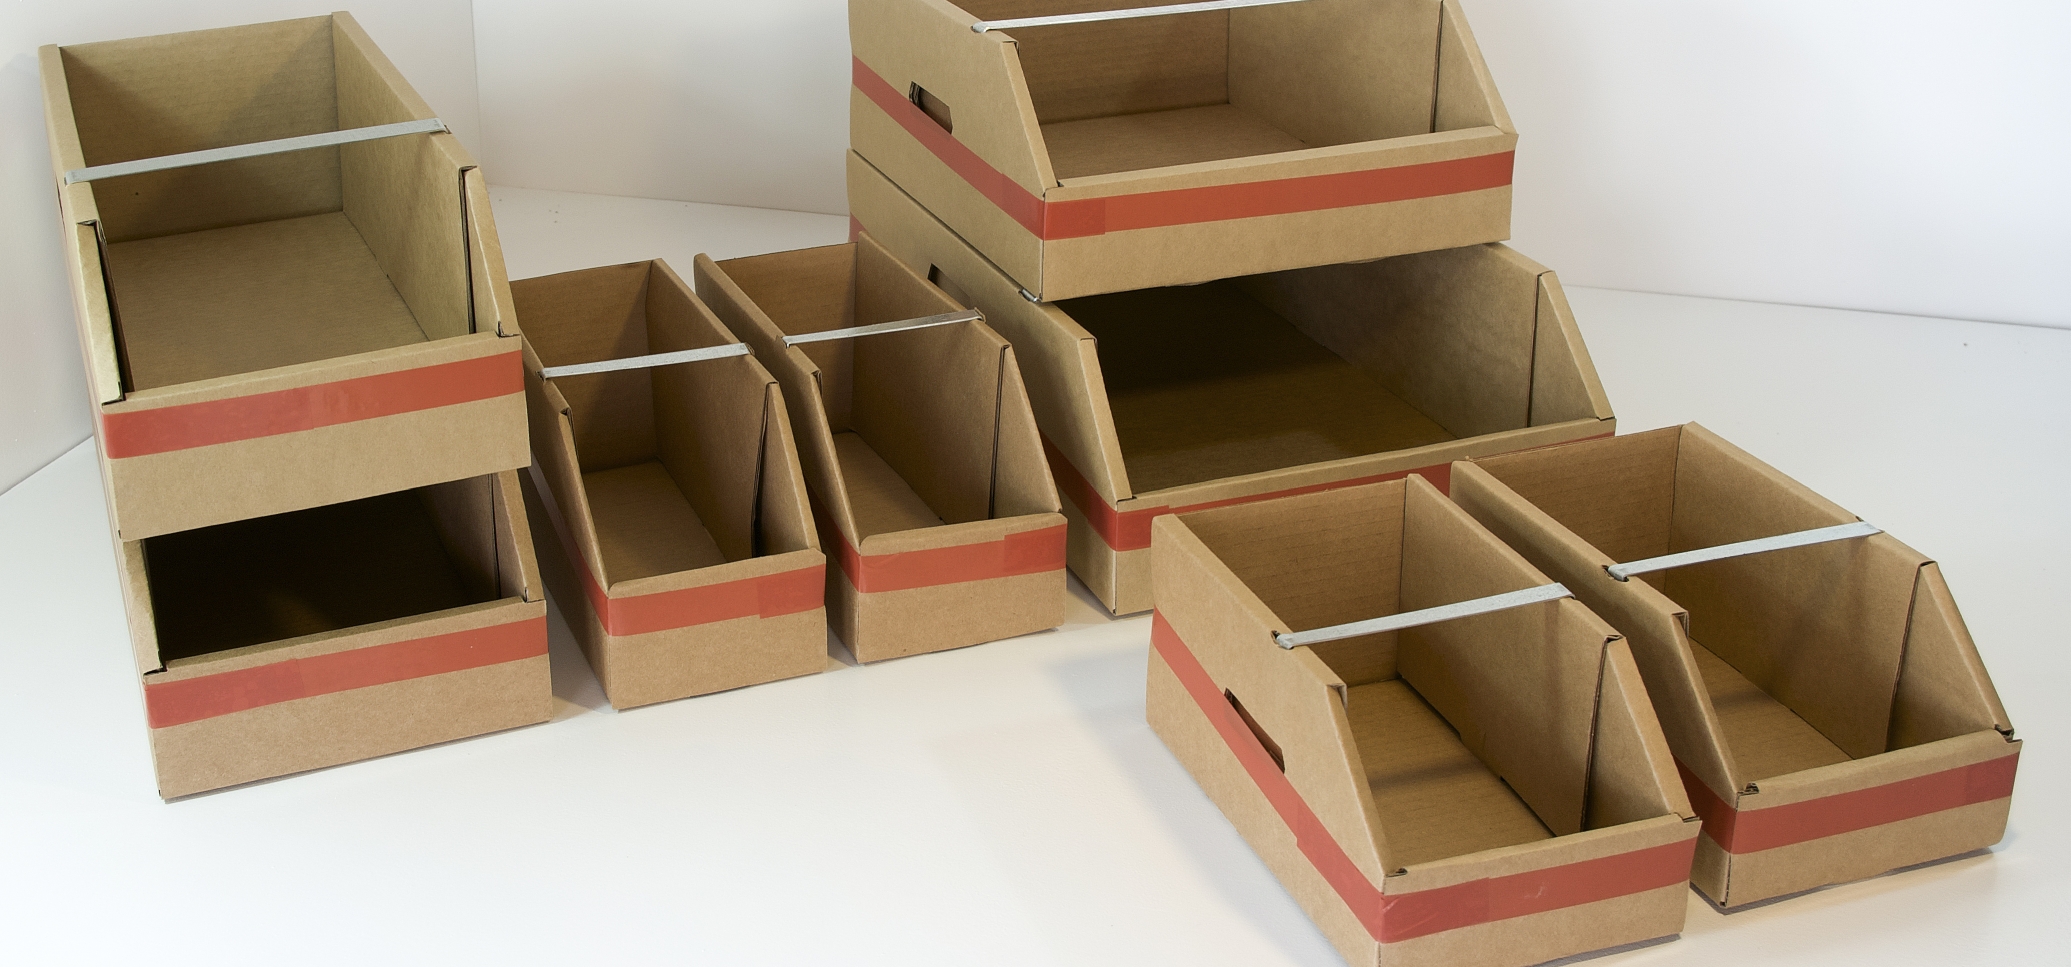 Cómo hacer un sistema de almacenamiento con cajas de cartón